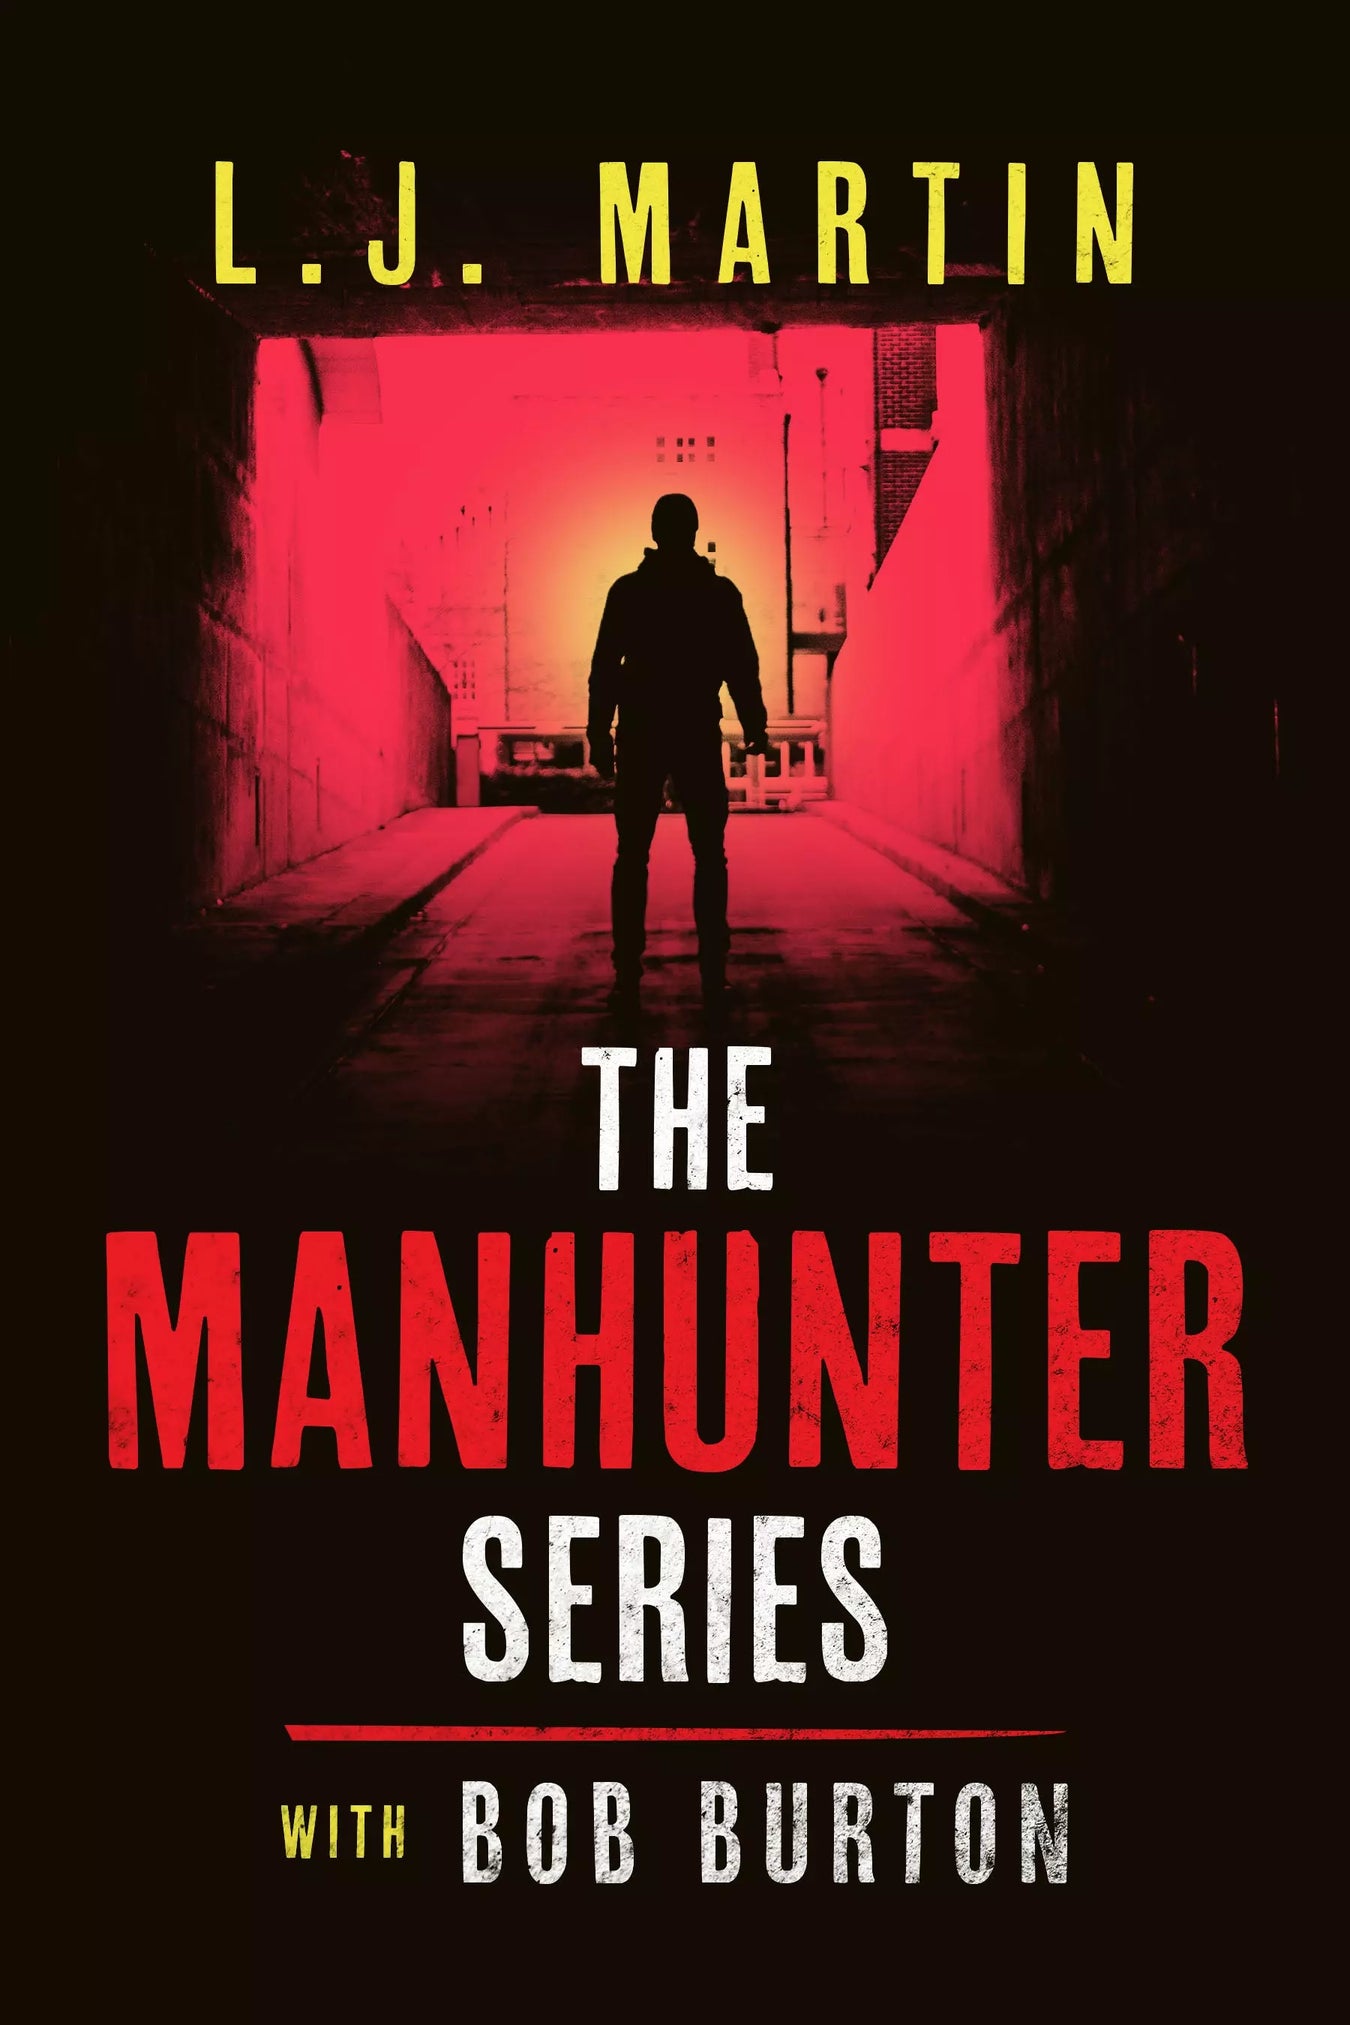 The Manhunter